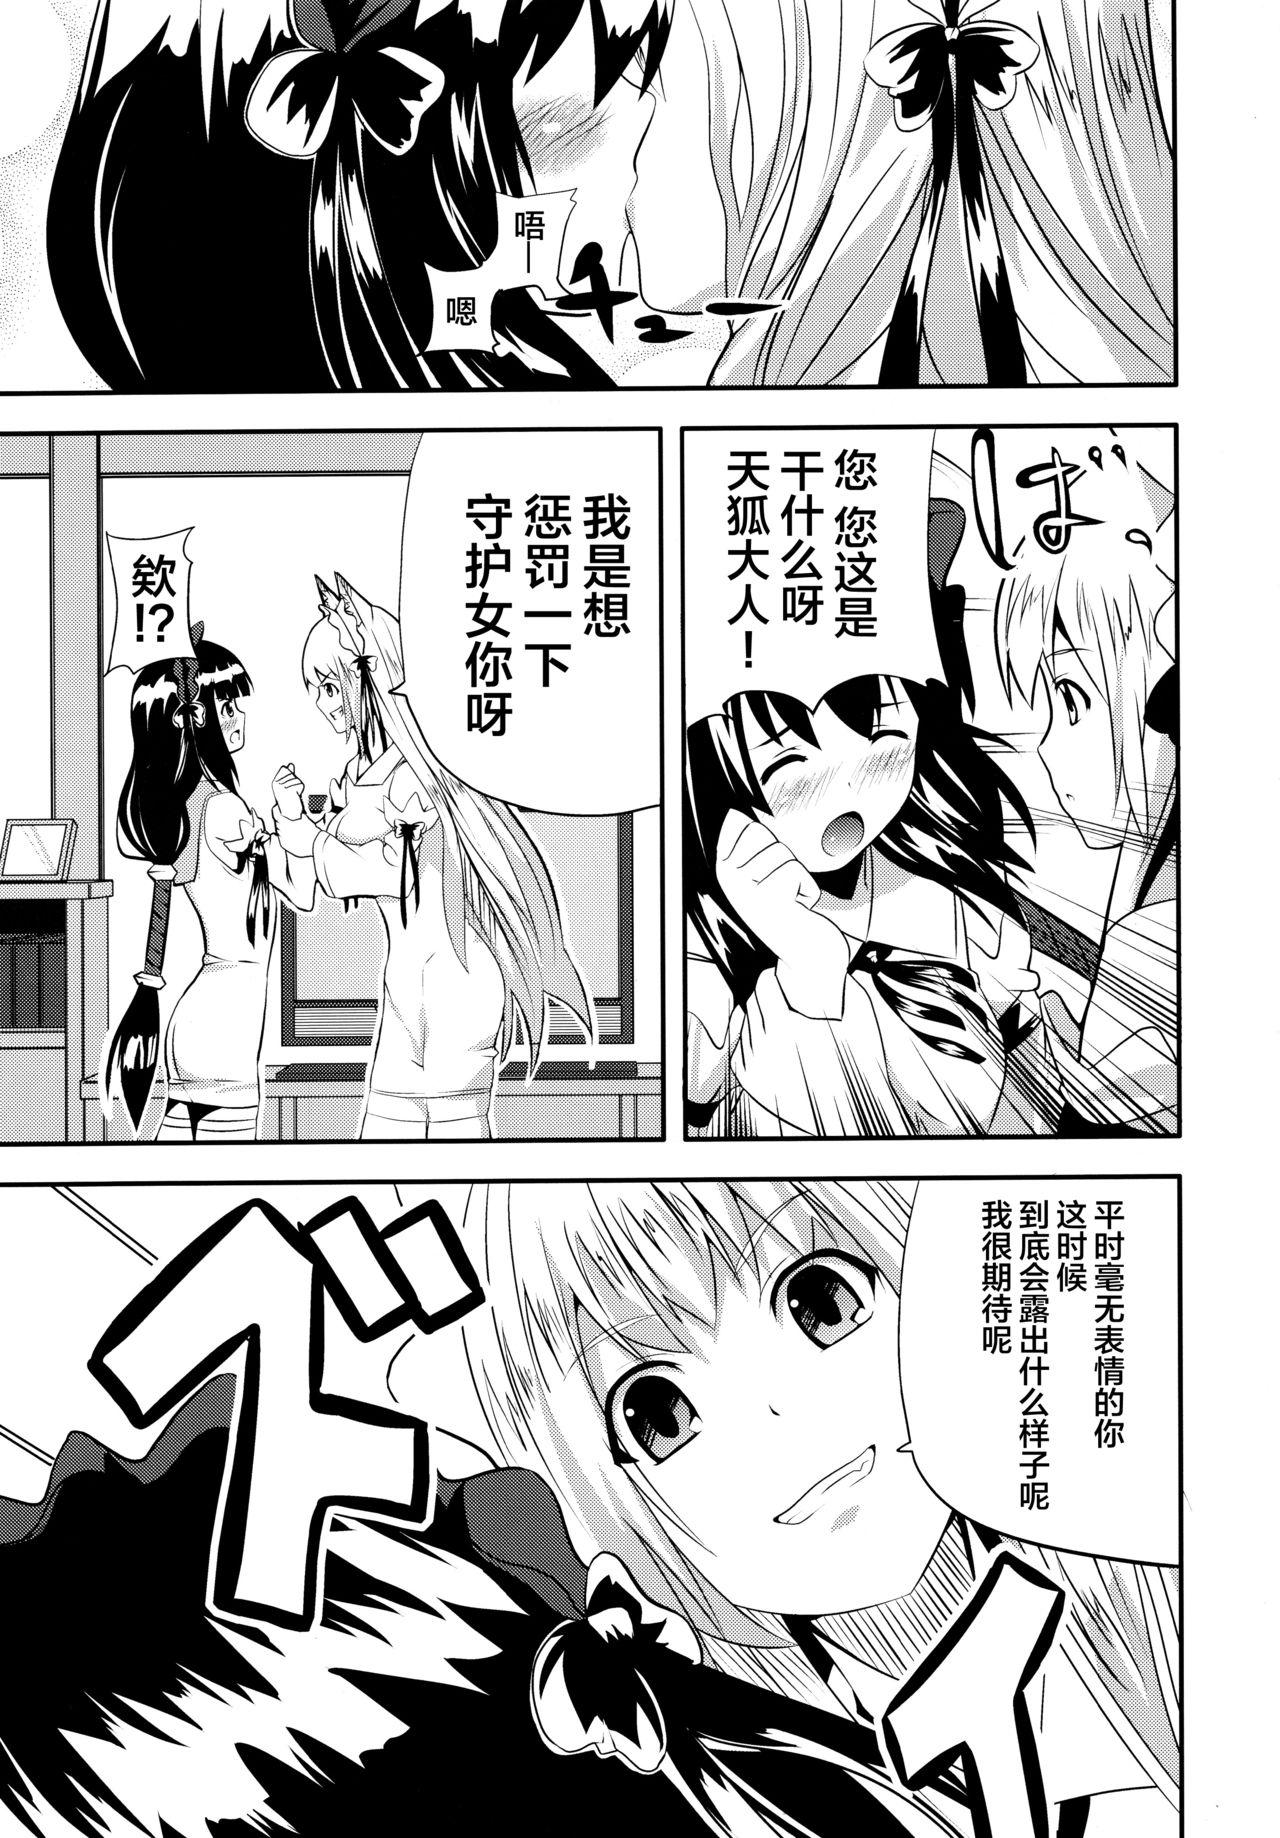 Bareback Hare, Tokidoki Oinari-sama 4 - Wagaya no oinari sama Hardcore - Page 11